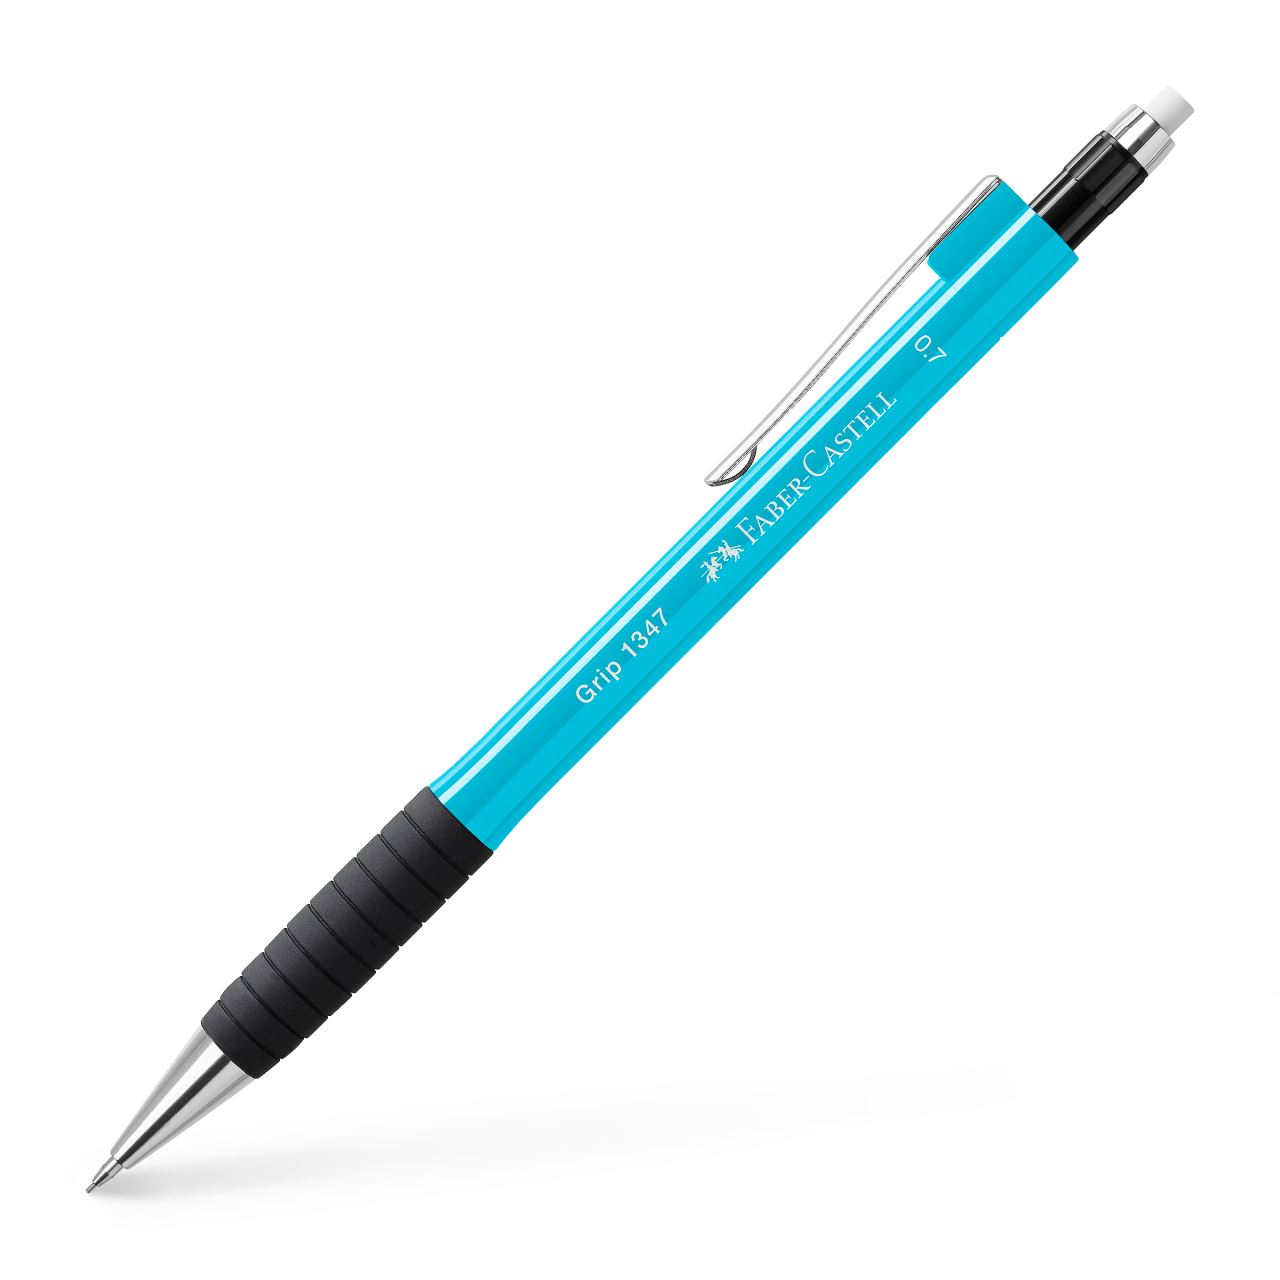 Faber-Castell - Mechanical pencil Grip 1347 0.7 mm light blue